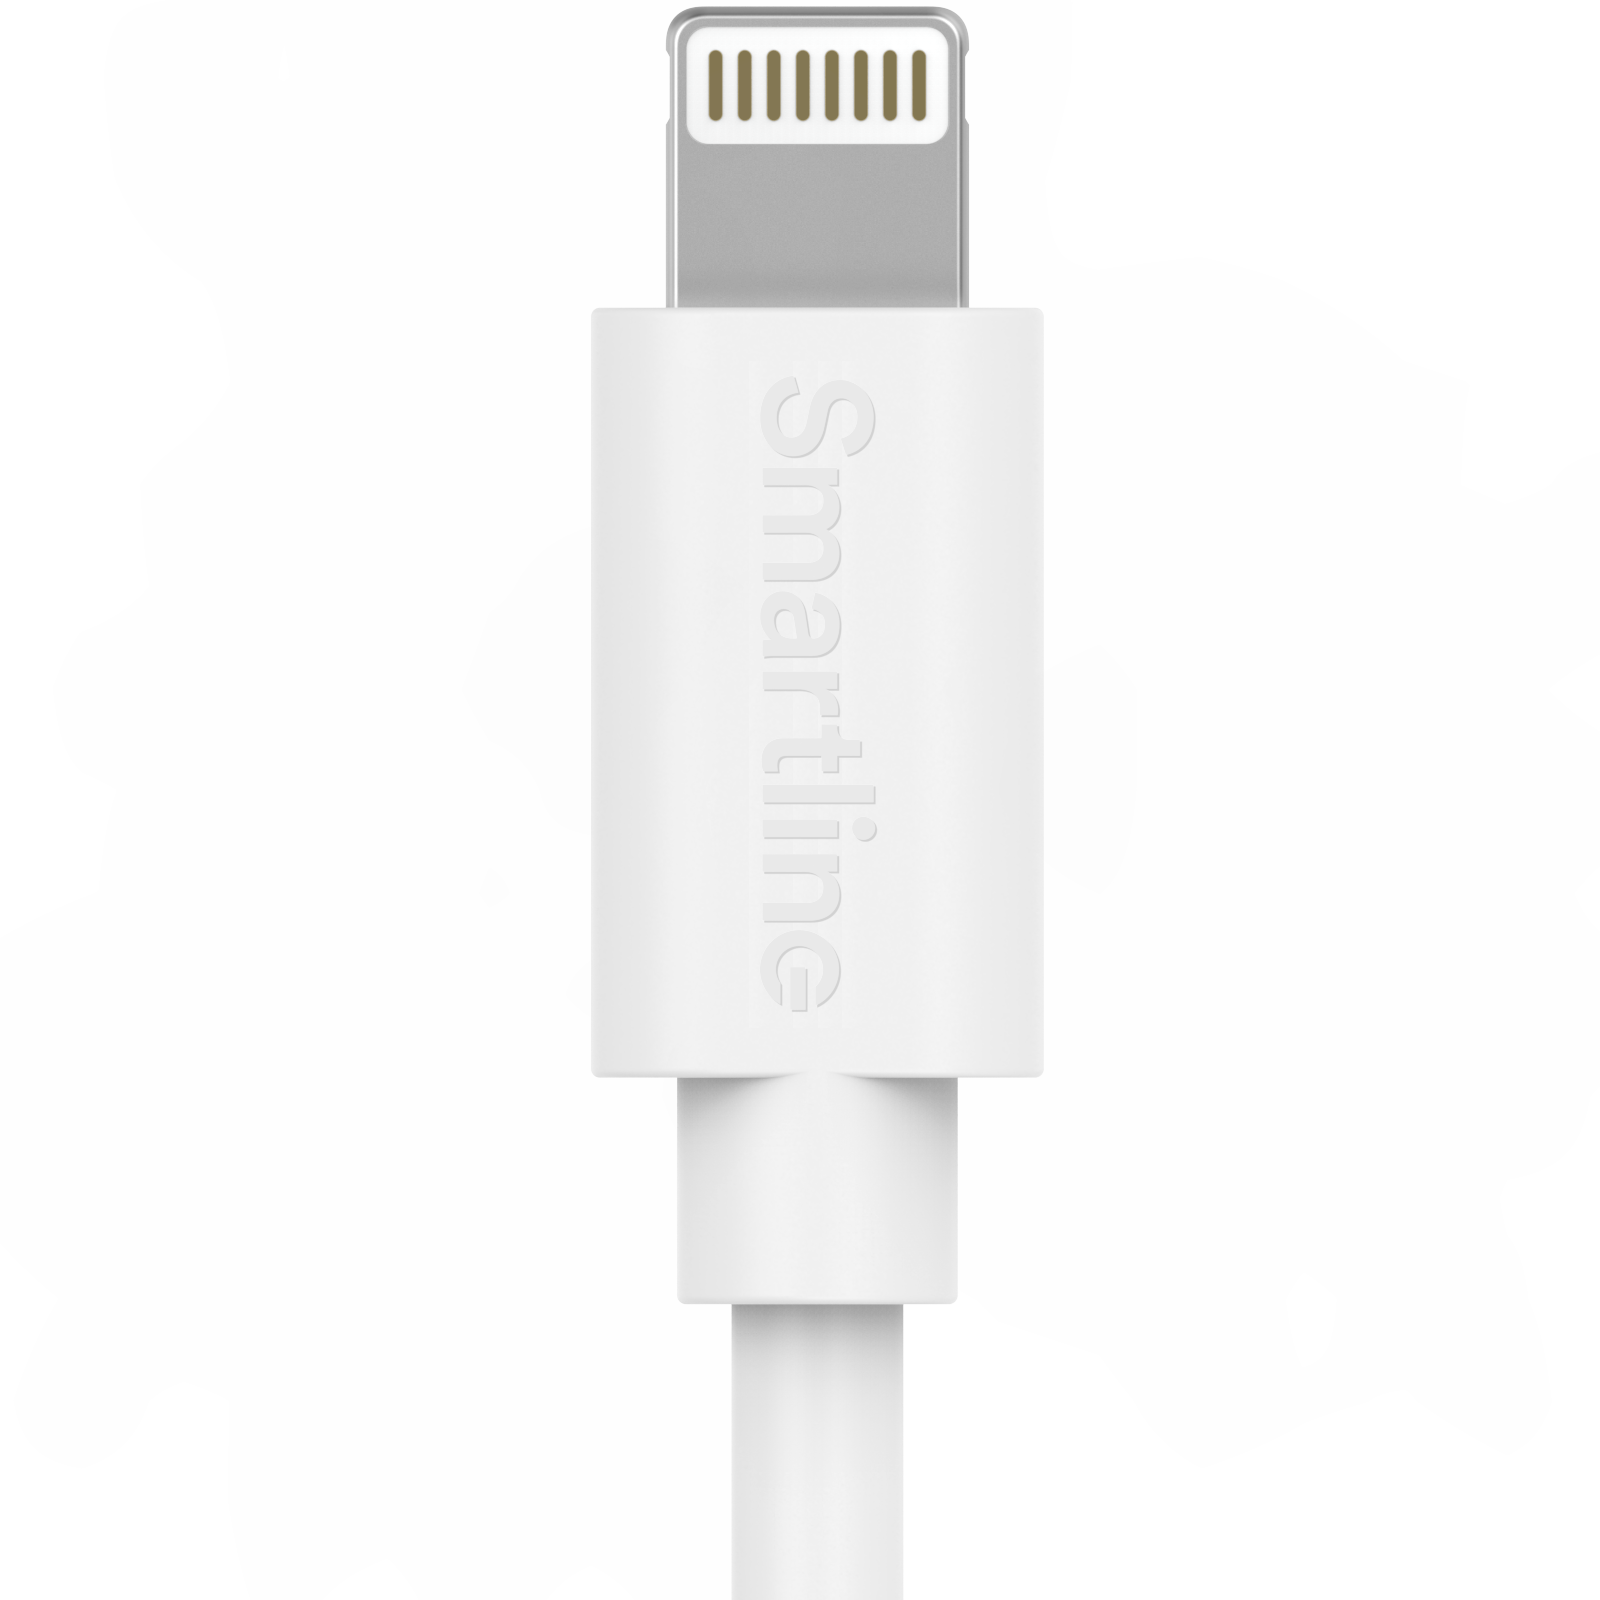 Zwei-in-eins-Ladegerät für iPhone 7 - 2m-Kabel und Wandladegerät - Smartline